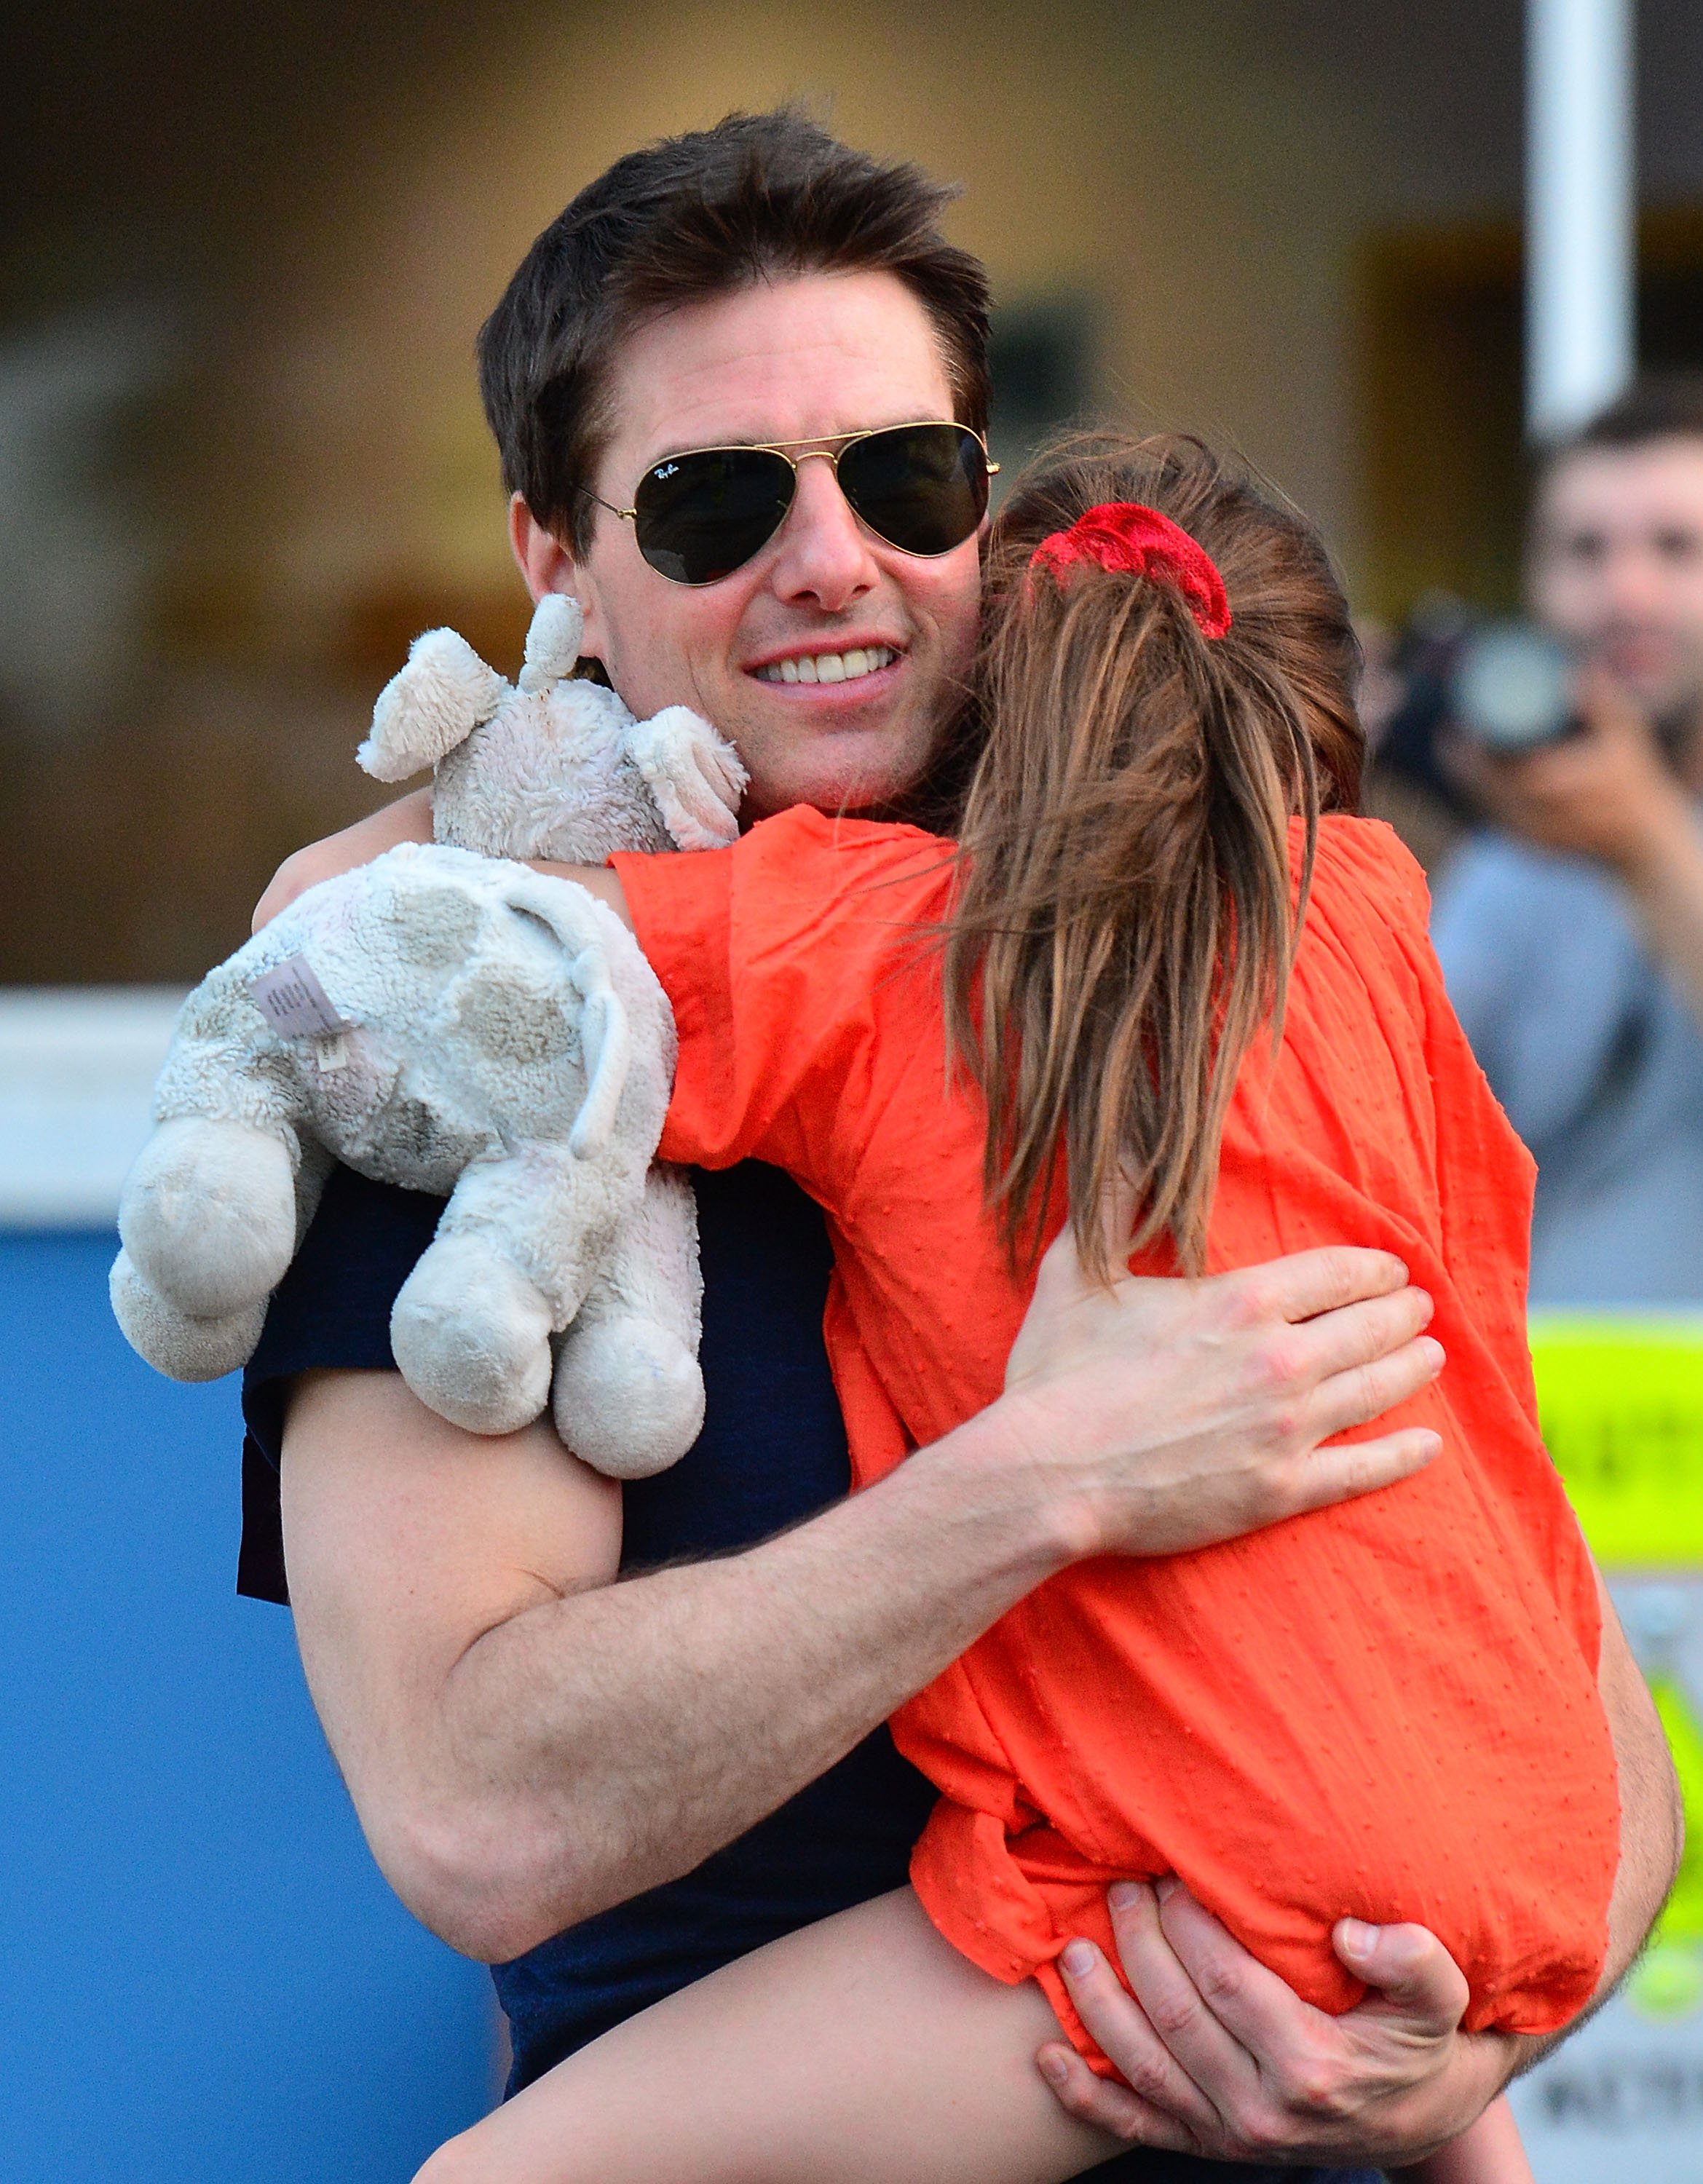 Tom Cruise tenant Suri Cruise dans ses bras à la sortie du Chelsea Piers, 2012, New York. | Photo : Getty Images